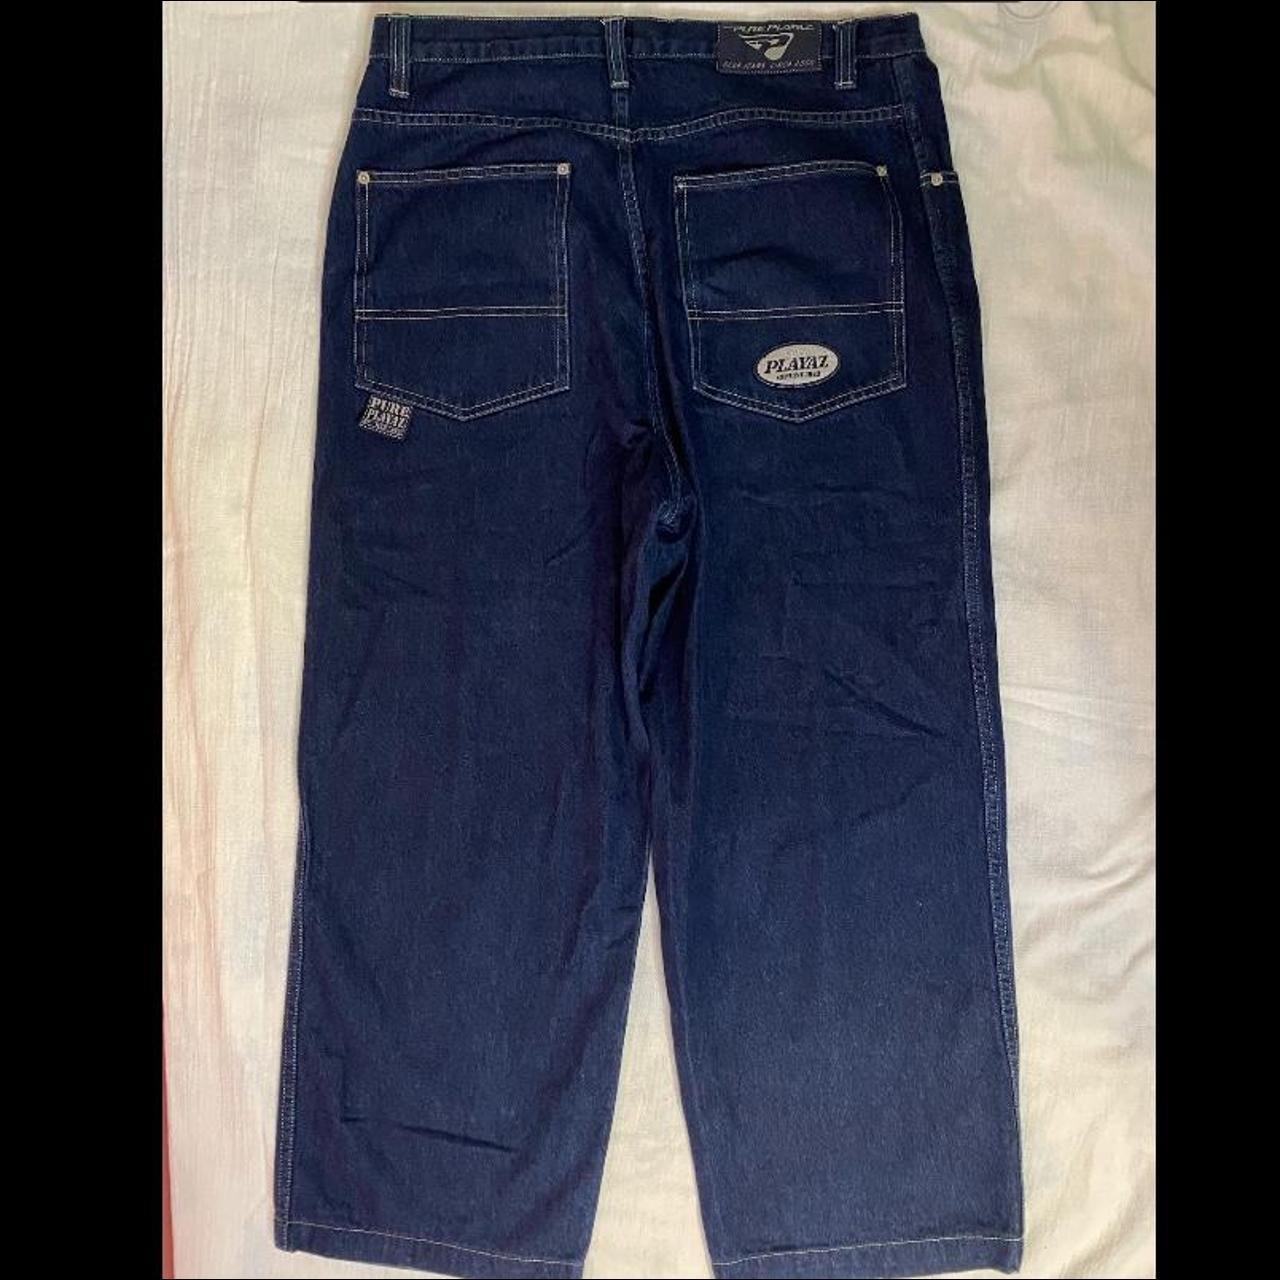 Vintage Pure Playaz Product Y2K Jeans Size... - Depop